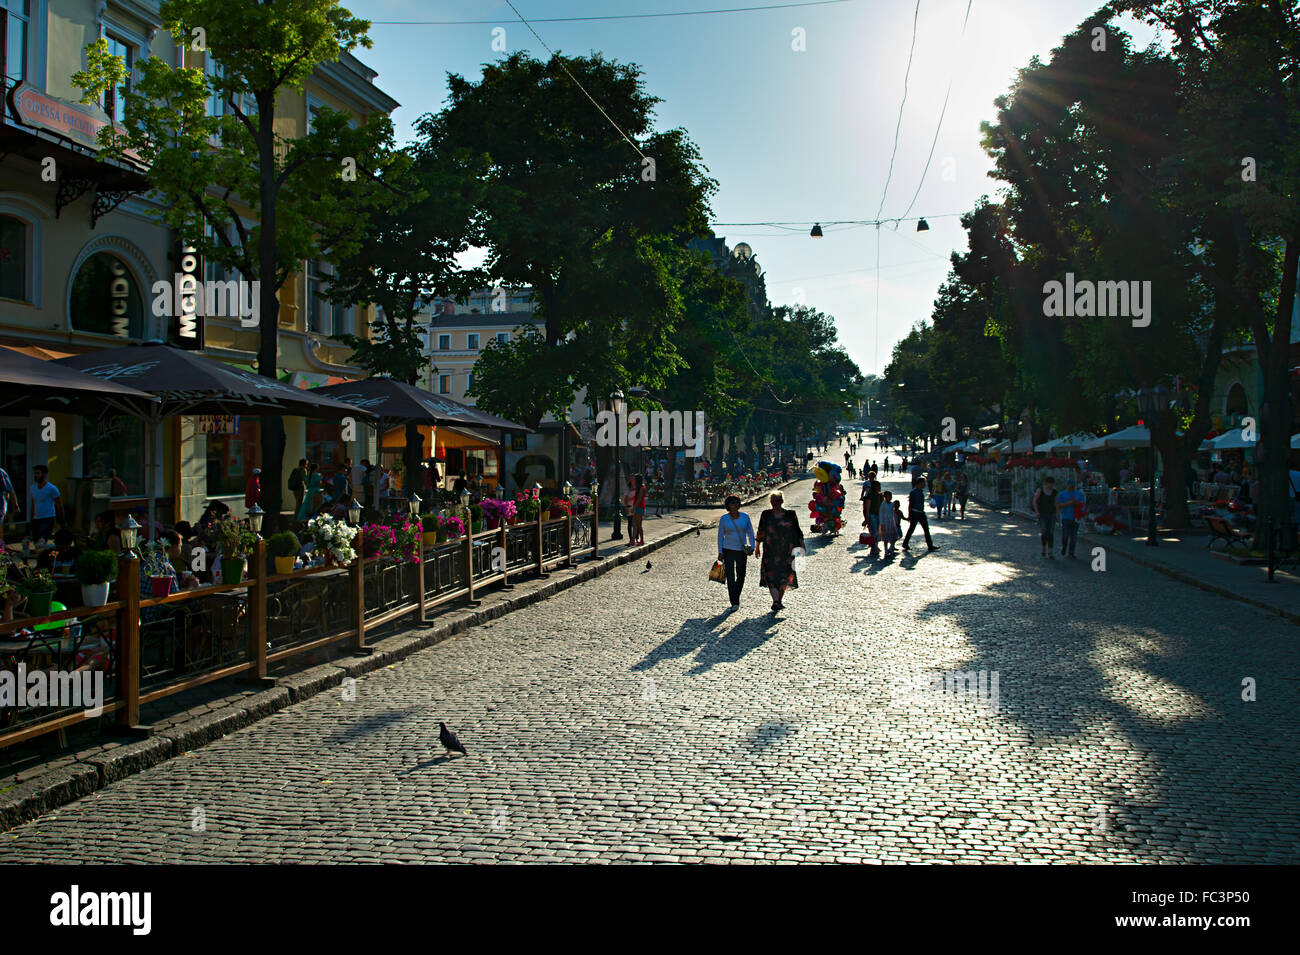 Deribasivska street, Odessa Stock Photo